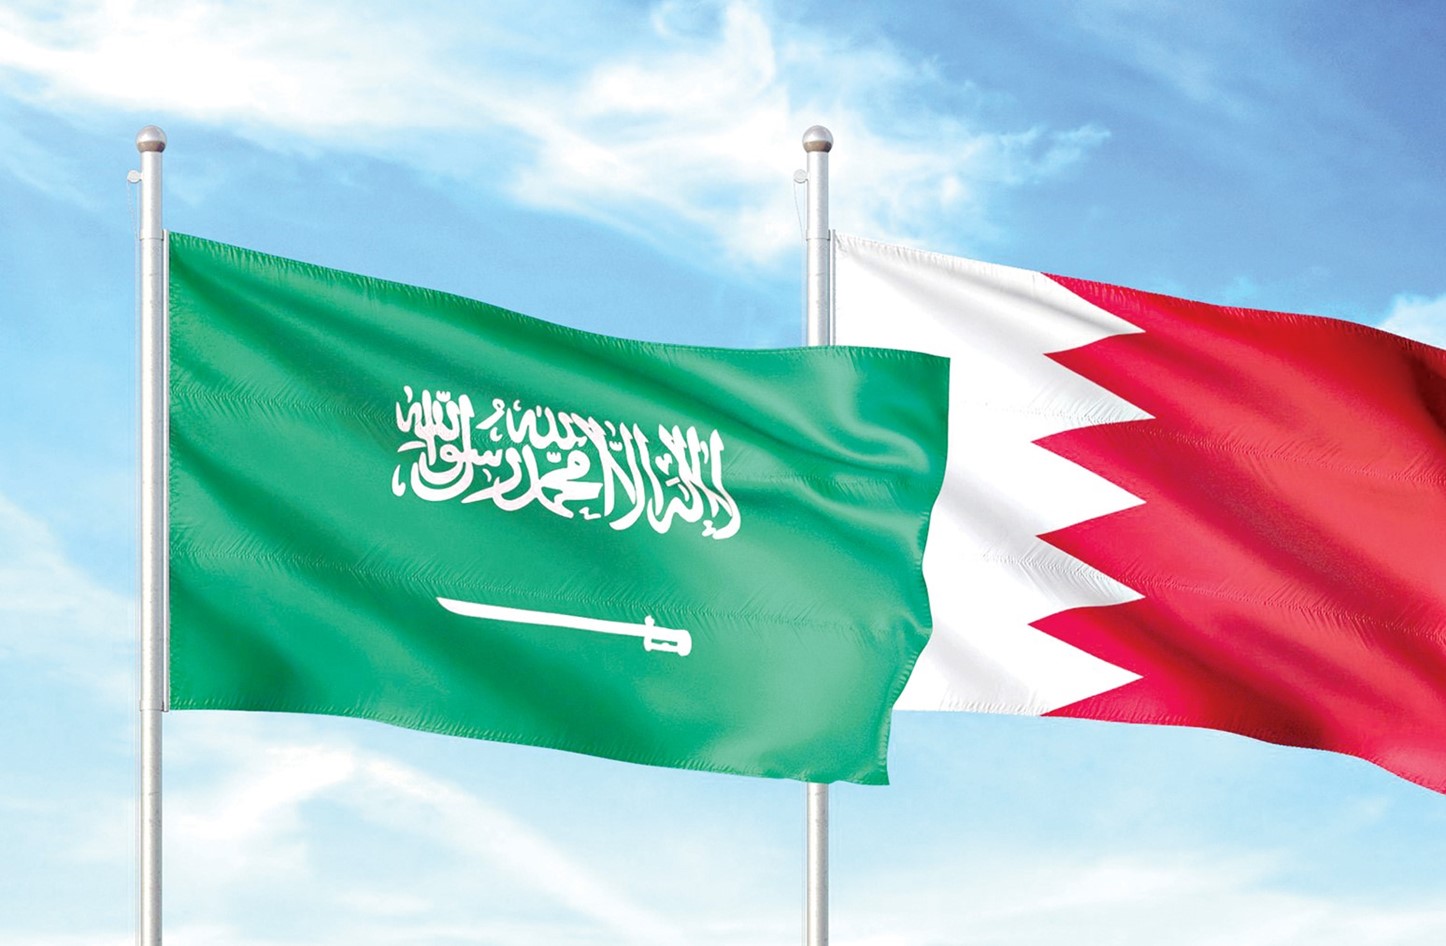 البحرين: ندعم الرياض لحفظ أمنها واستقرارها ضد عدوان الحوثي